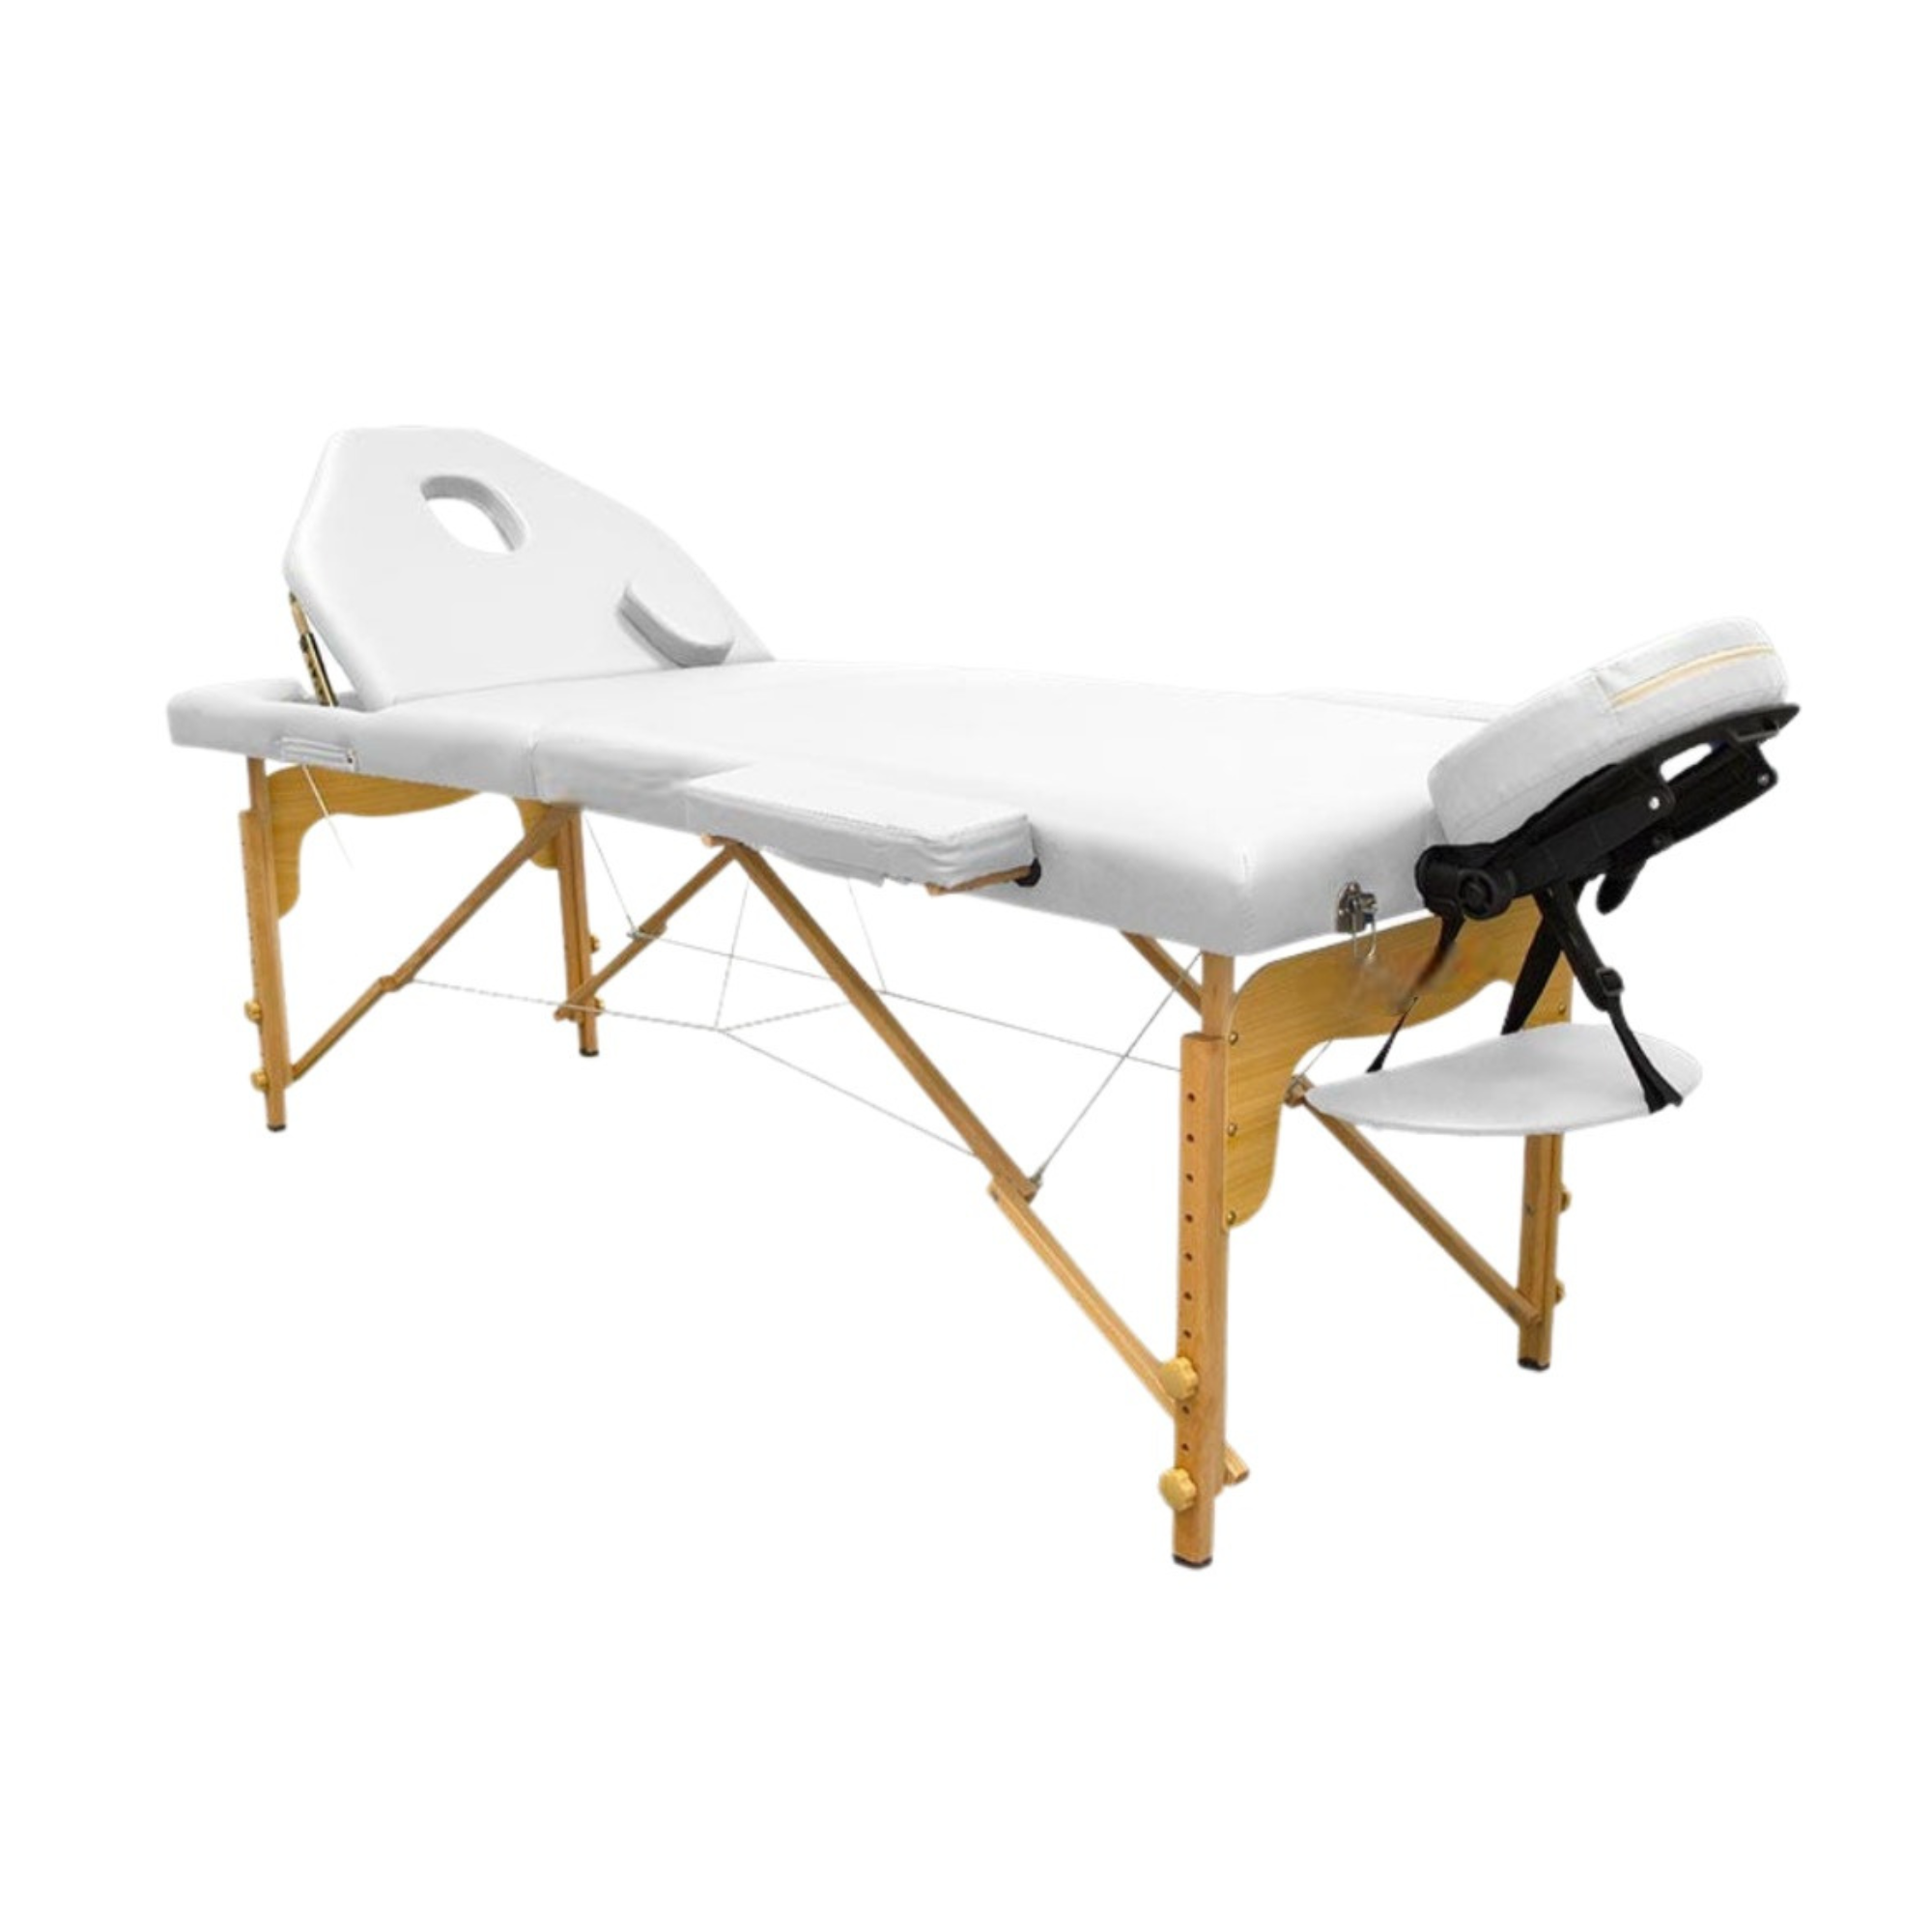 Table de massage pliante en bois 194 x 70 cm avec dossier inclinable - 7 coloris